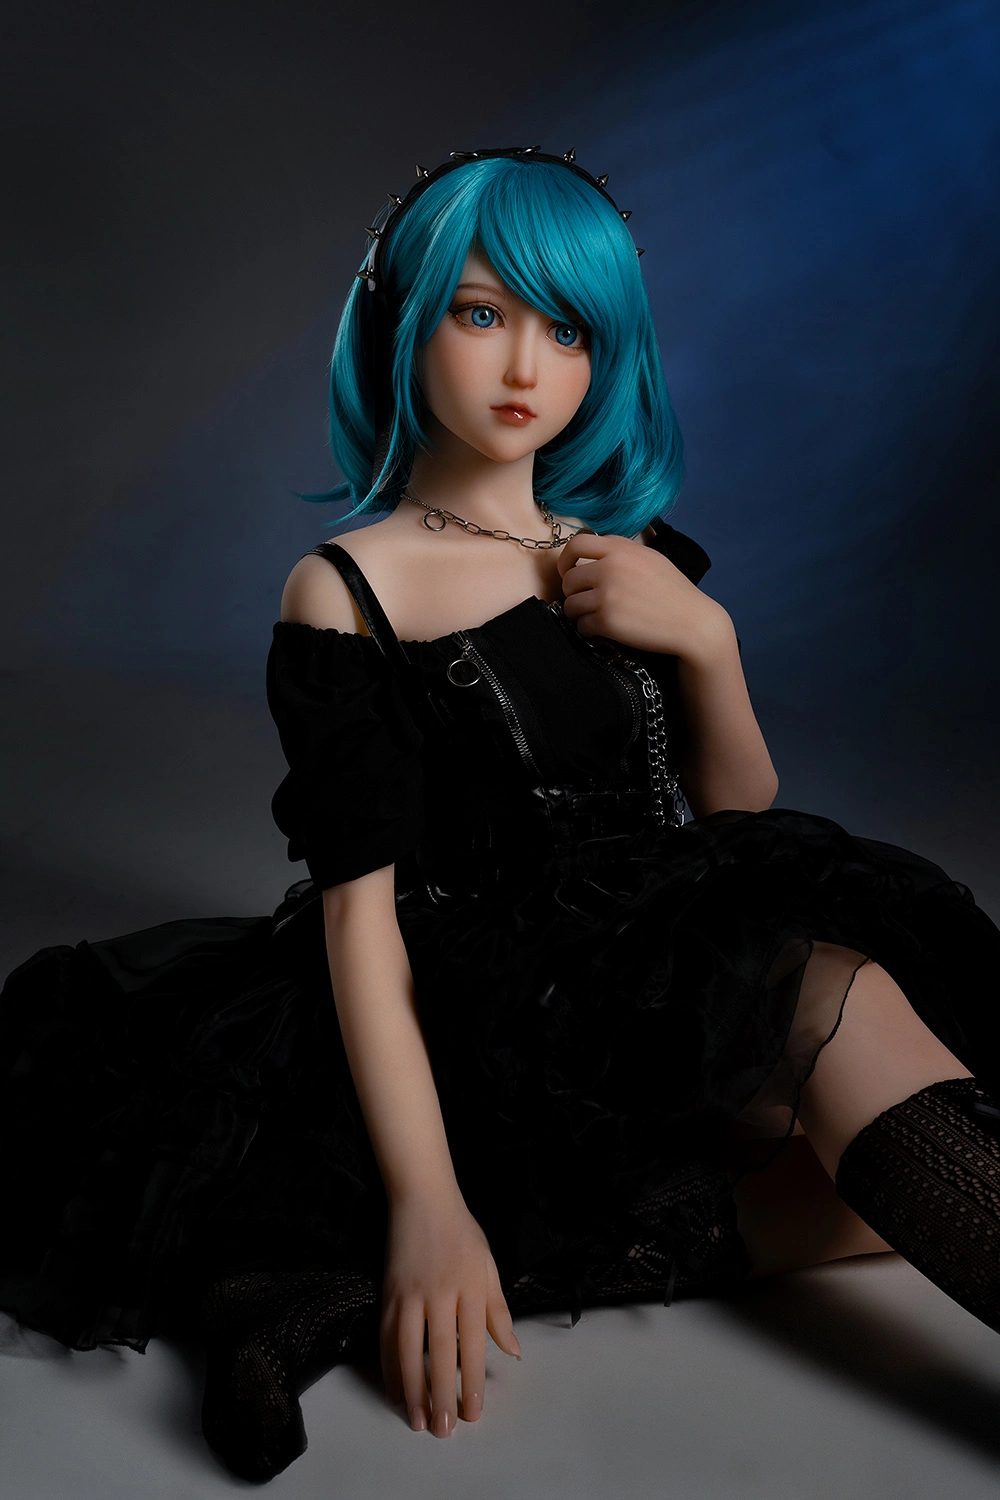 Blue hair pure sex doll